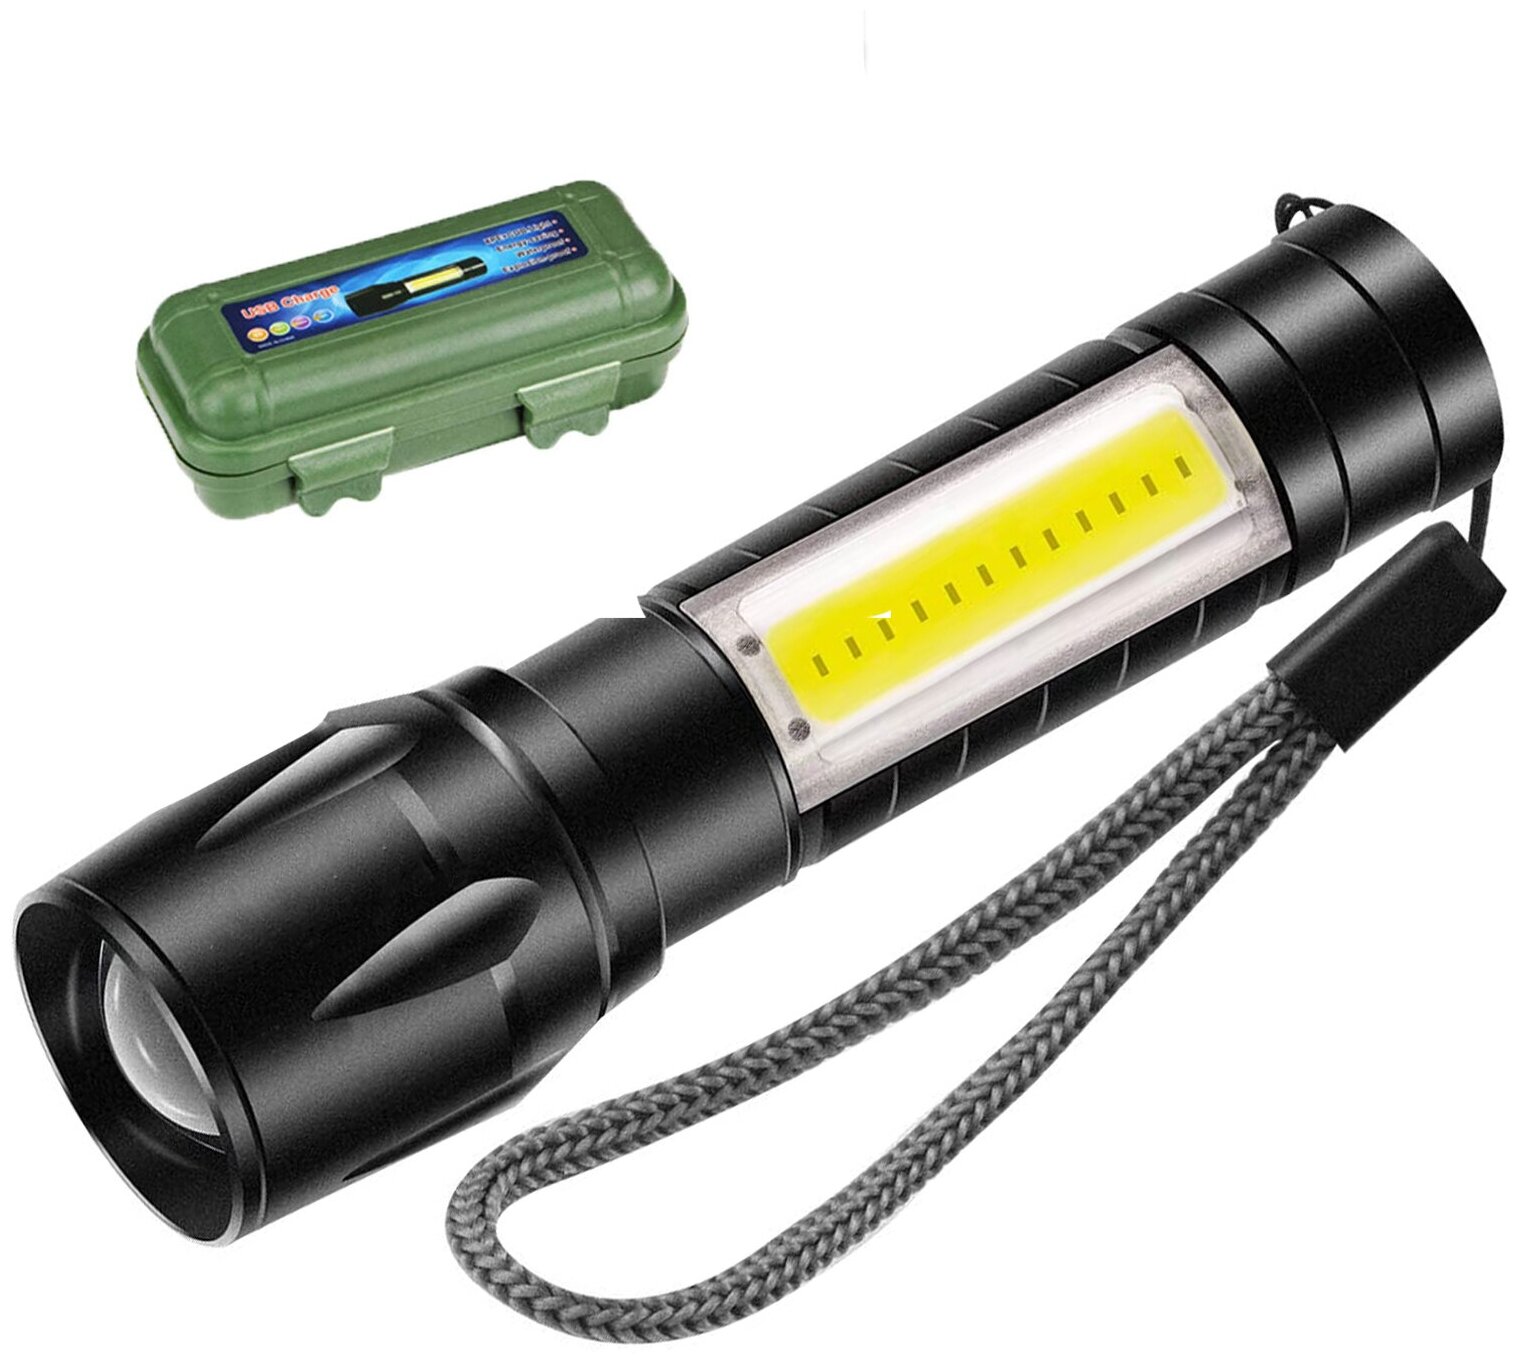 Ручной компактный фонарик от SimpleShop с регулировкой угла свечения стробоскопом и зарядкой от USB